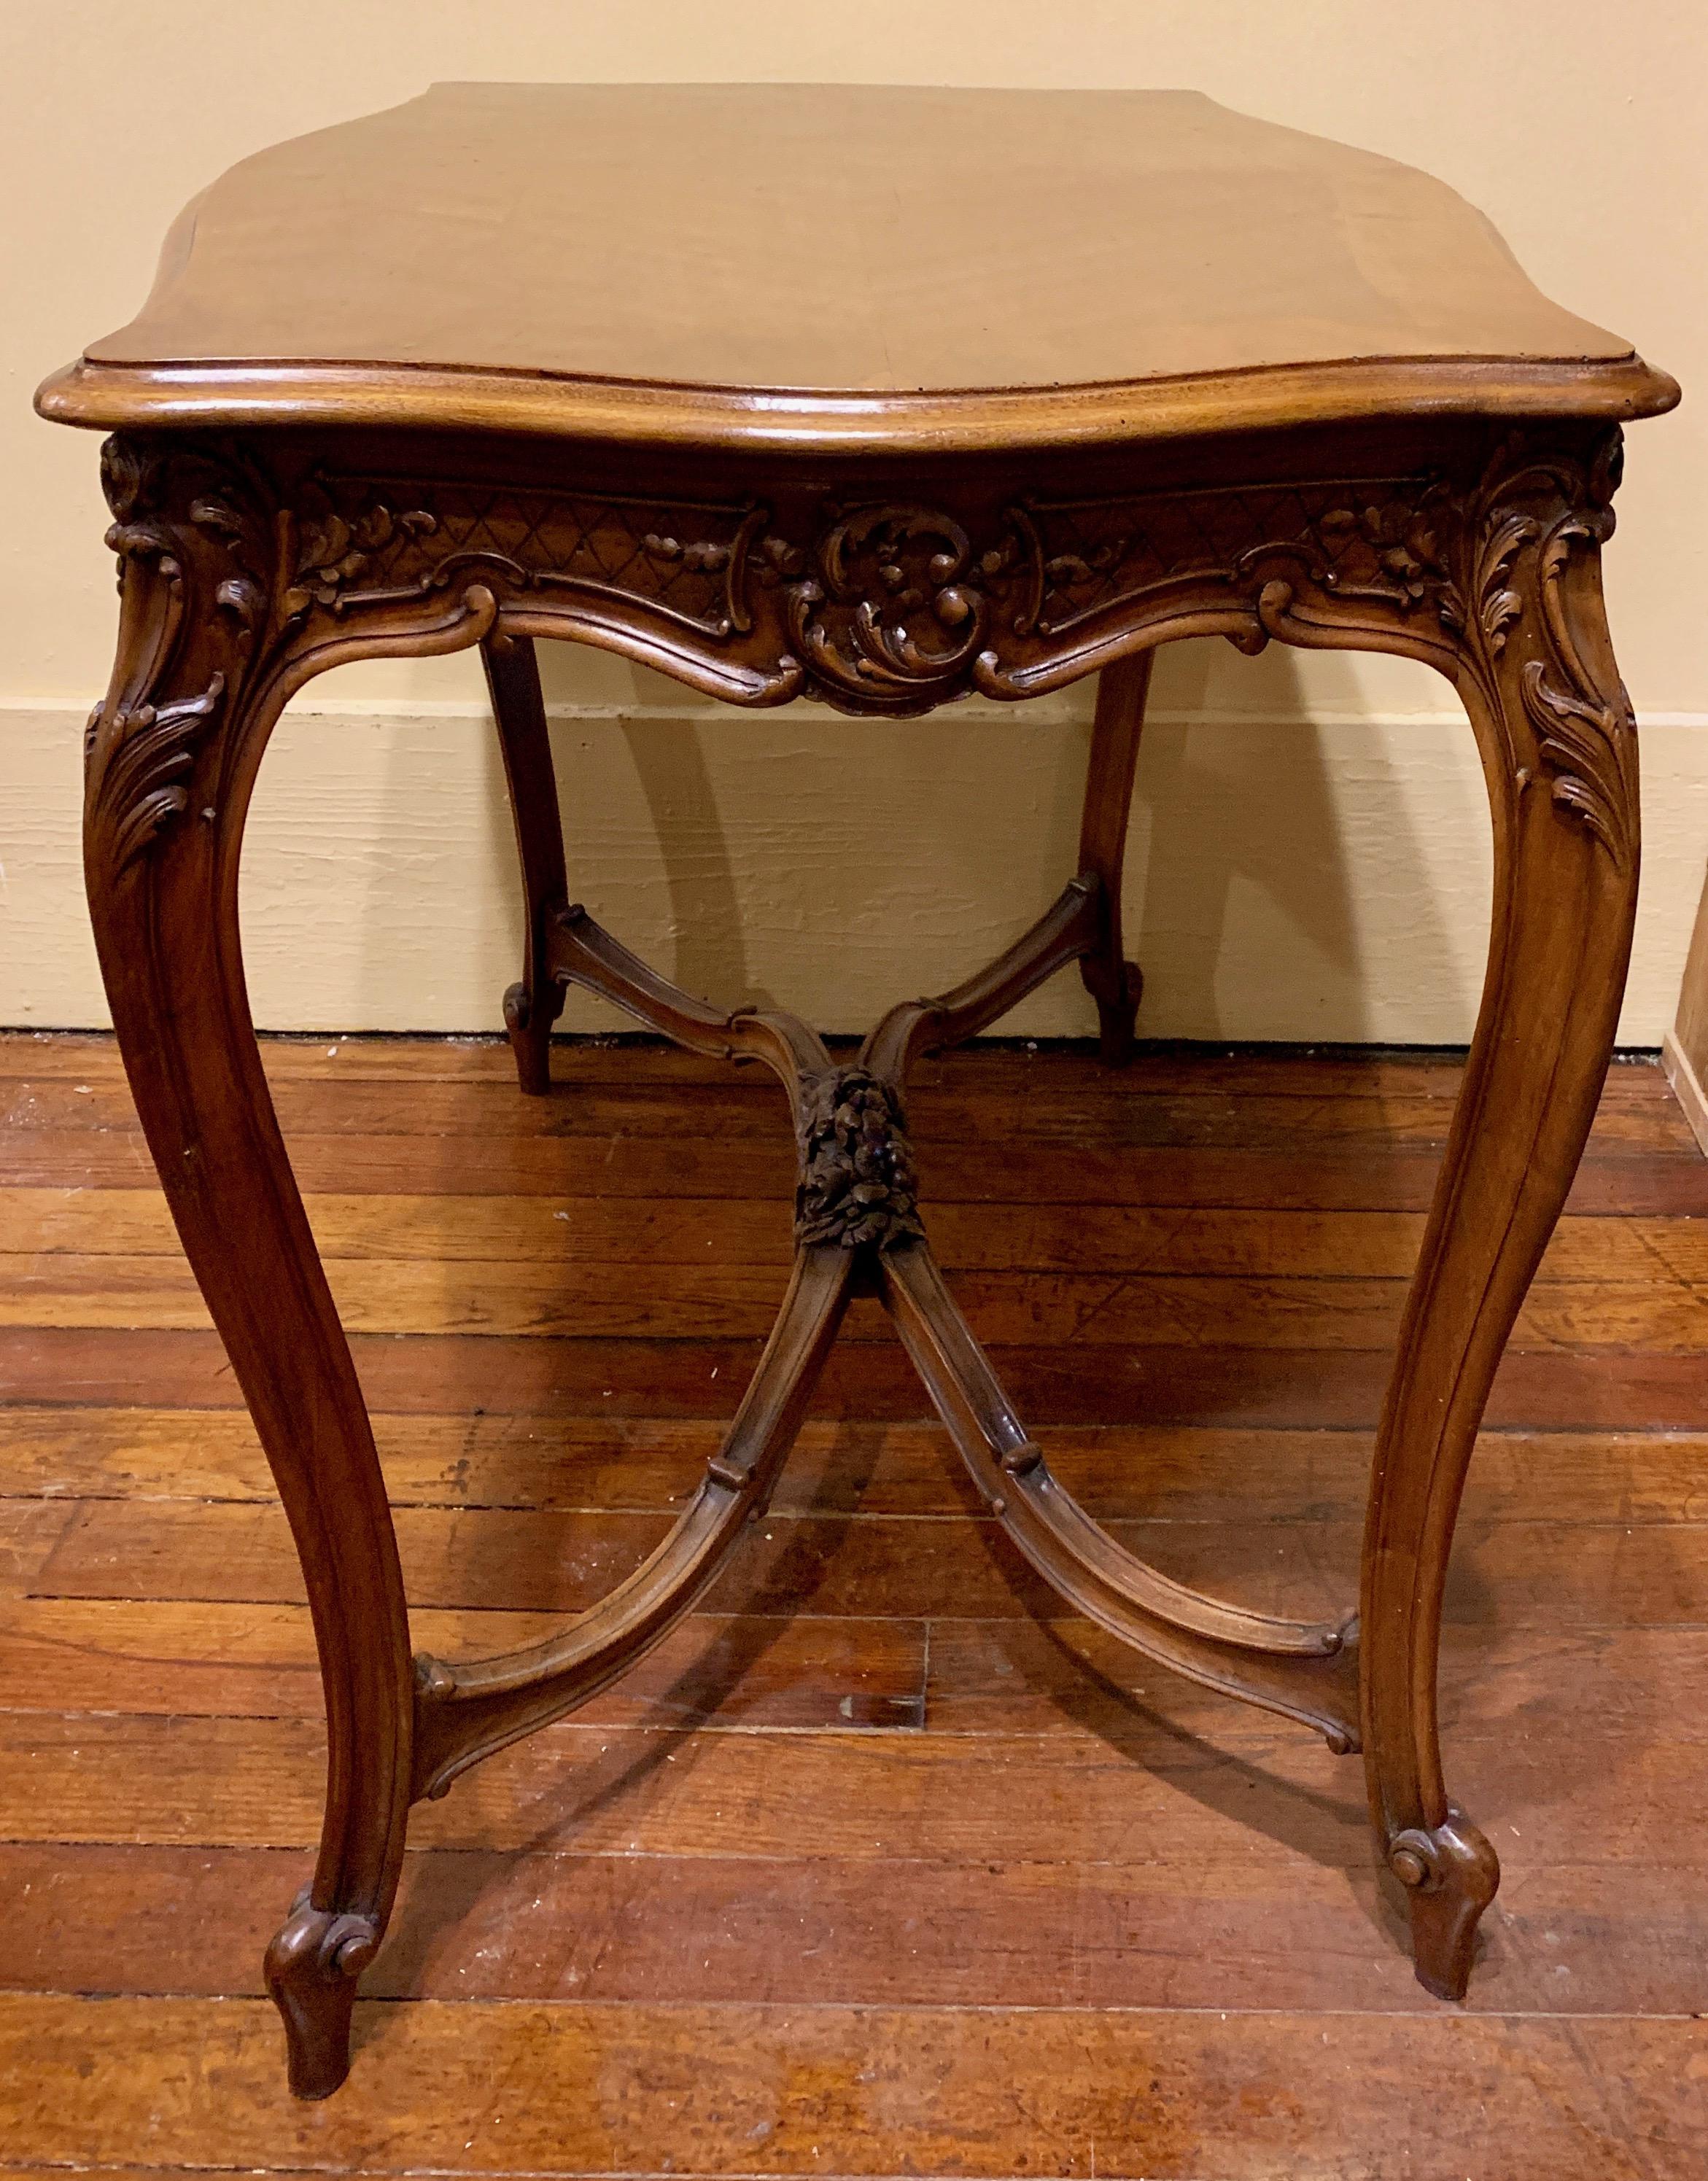 Une jolie table avec de beaux éléments sculptés et d'une belle taille, aussi.
 